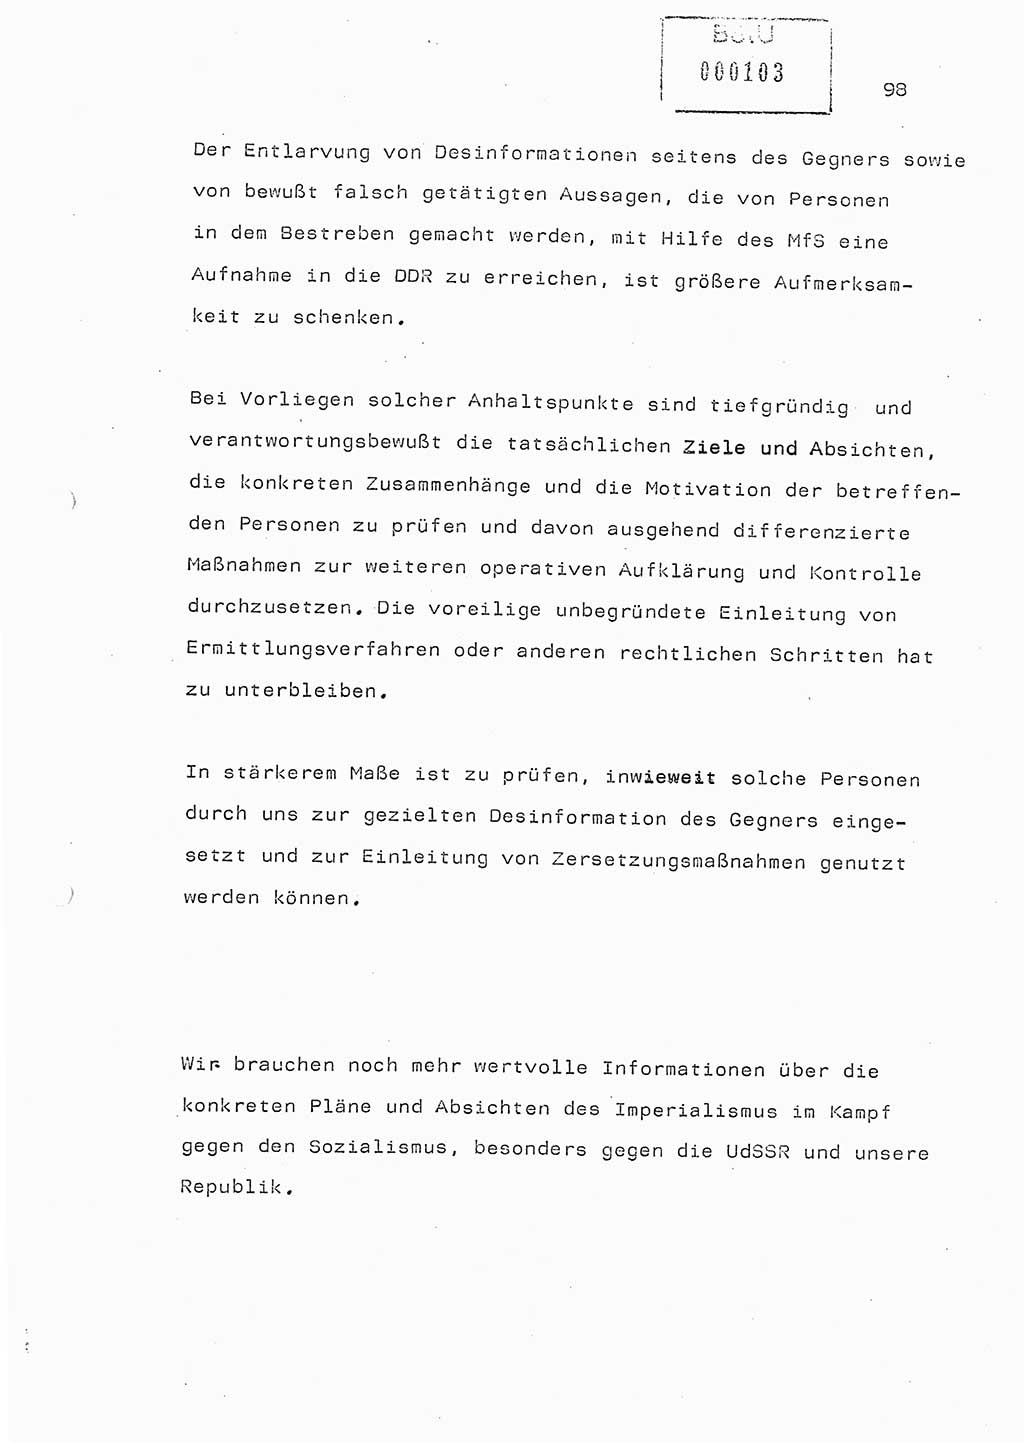 Referat (Generaloberst Erich Mielke) auf der Zentralen Dienstkonferenz am 24.5.1979 [Ministerium für Staatssicherheit (MfS), Deutsche Demokratische Republik (DDR), Der Minister], Berlin 1979, Seite 98 (Ref. DK DDR MfS Min. /79 1979, S. 98)